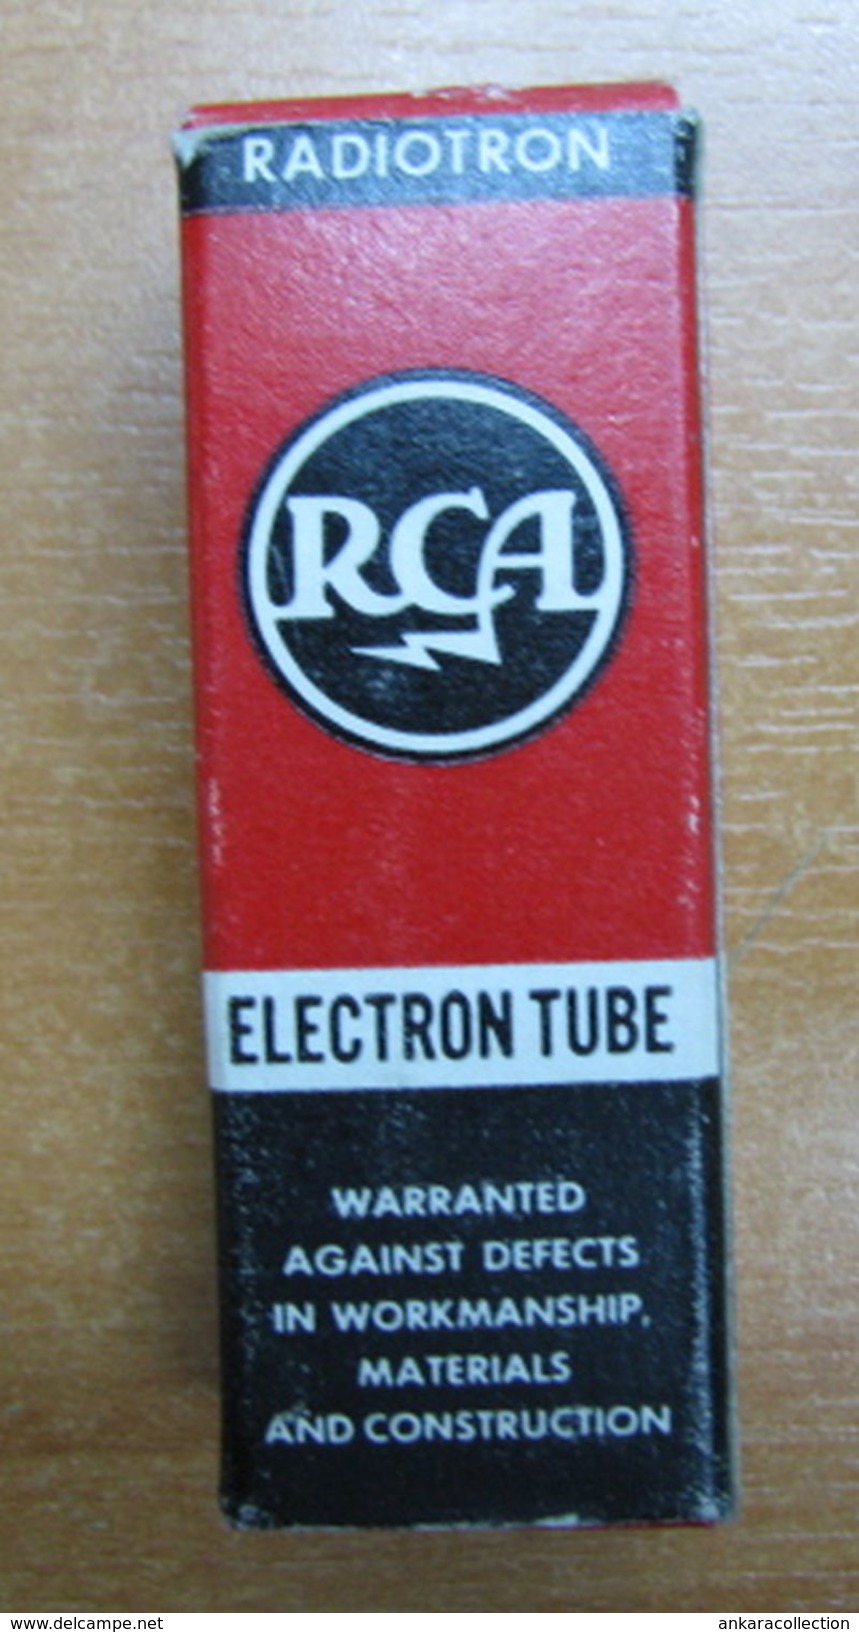 AC - RCA RADIOTRON ELECTRON TUBE MADE IN USA - Elektronenbuis